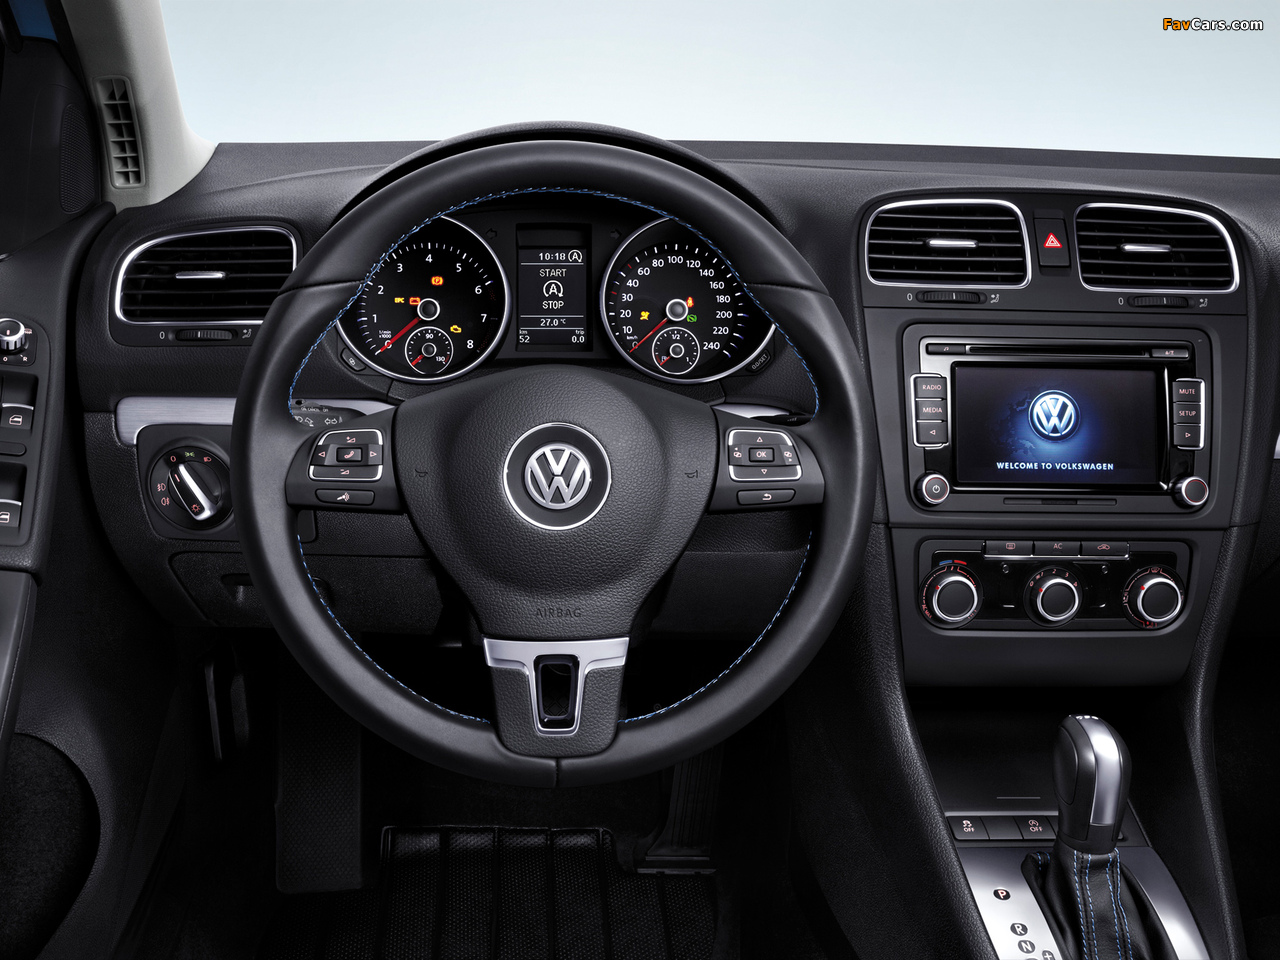 Volkswagen Golf BlueMotion CN-spec (Typ 5K) 2012 pictures (1280 x 960)